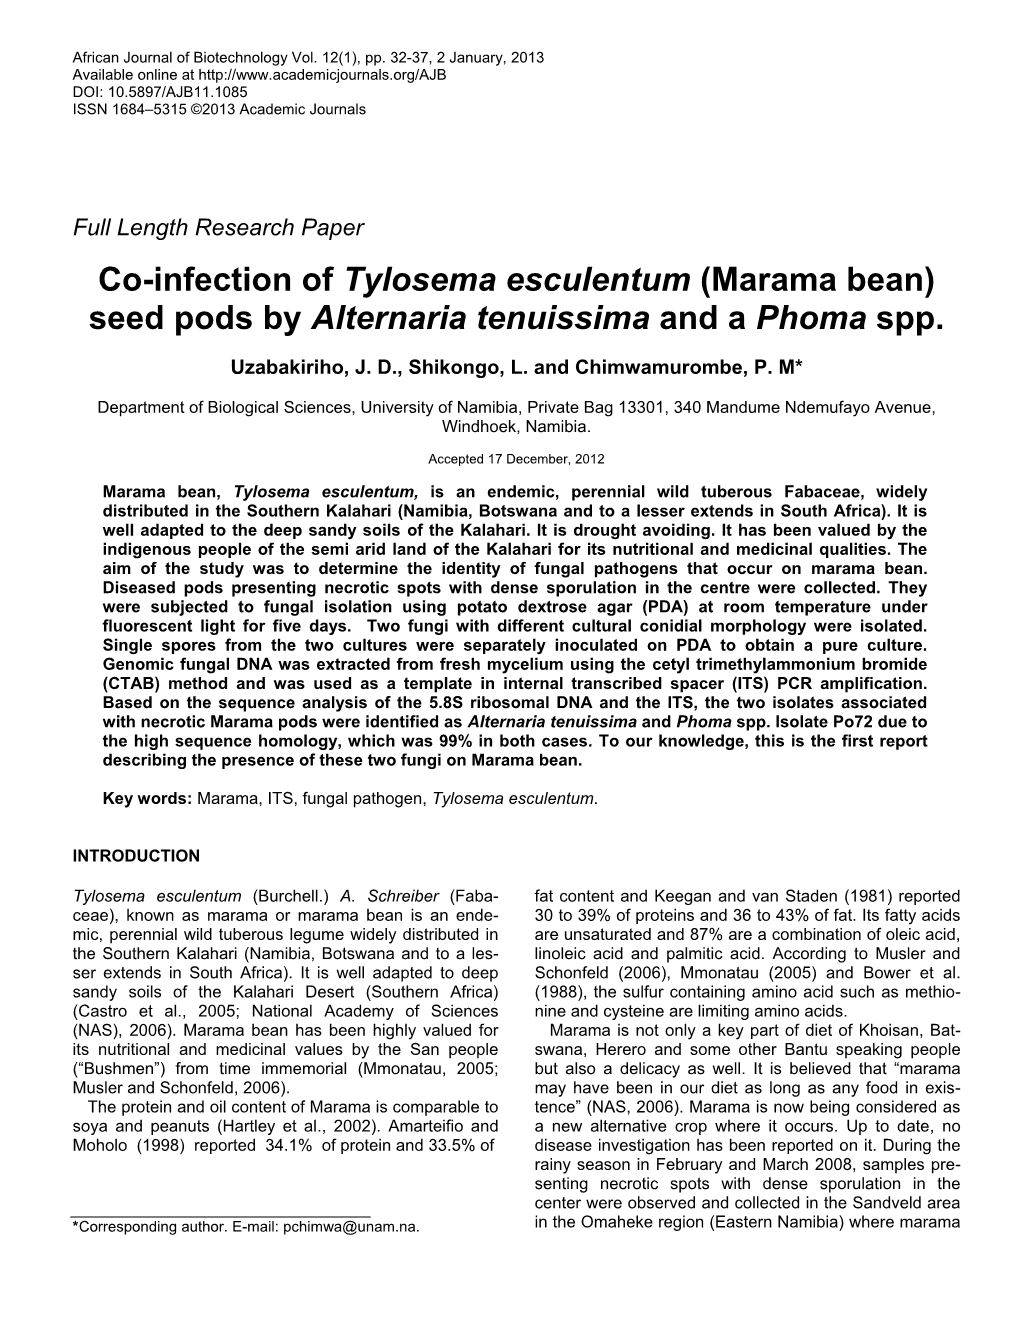 First Report of Alternaria Tenuissima on Marama ( Tylosema Esculentum) In